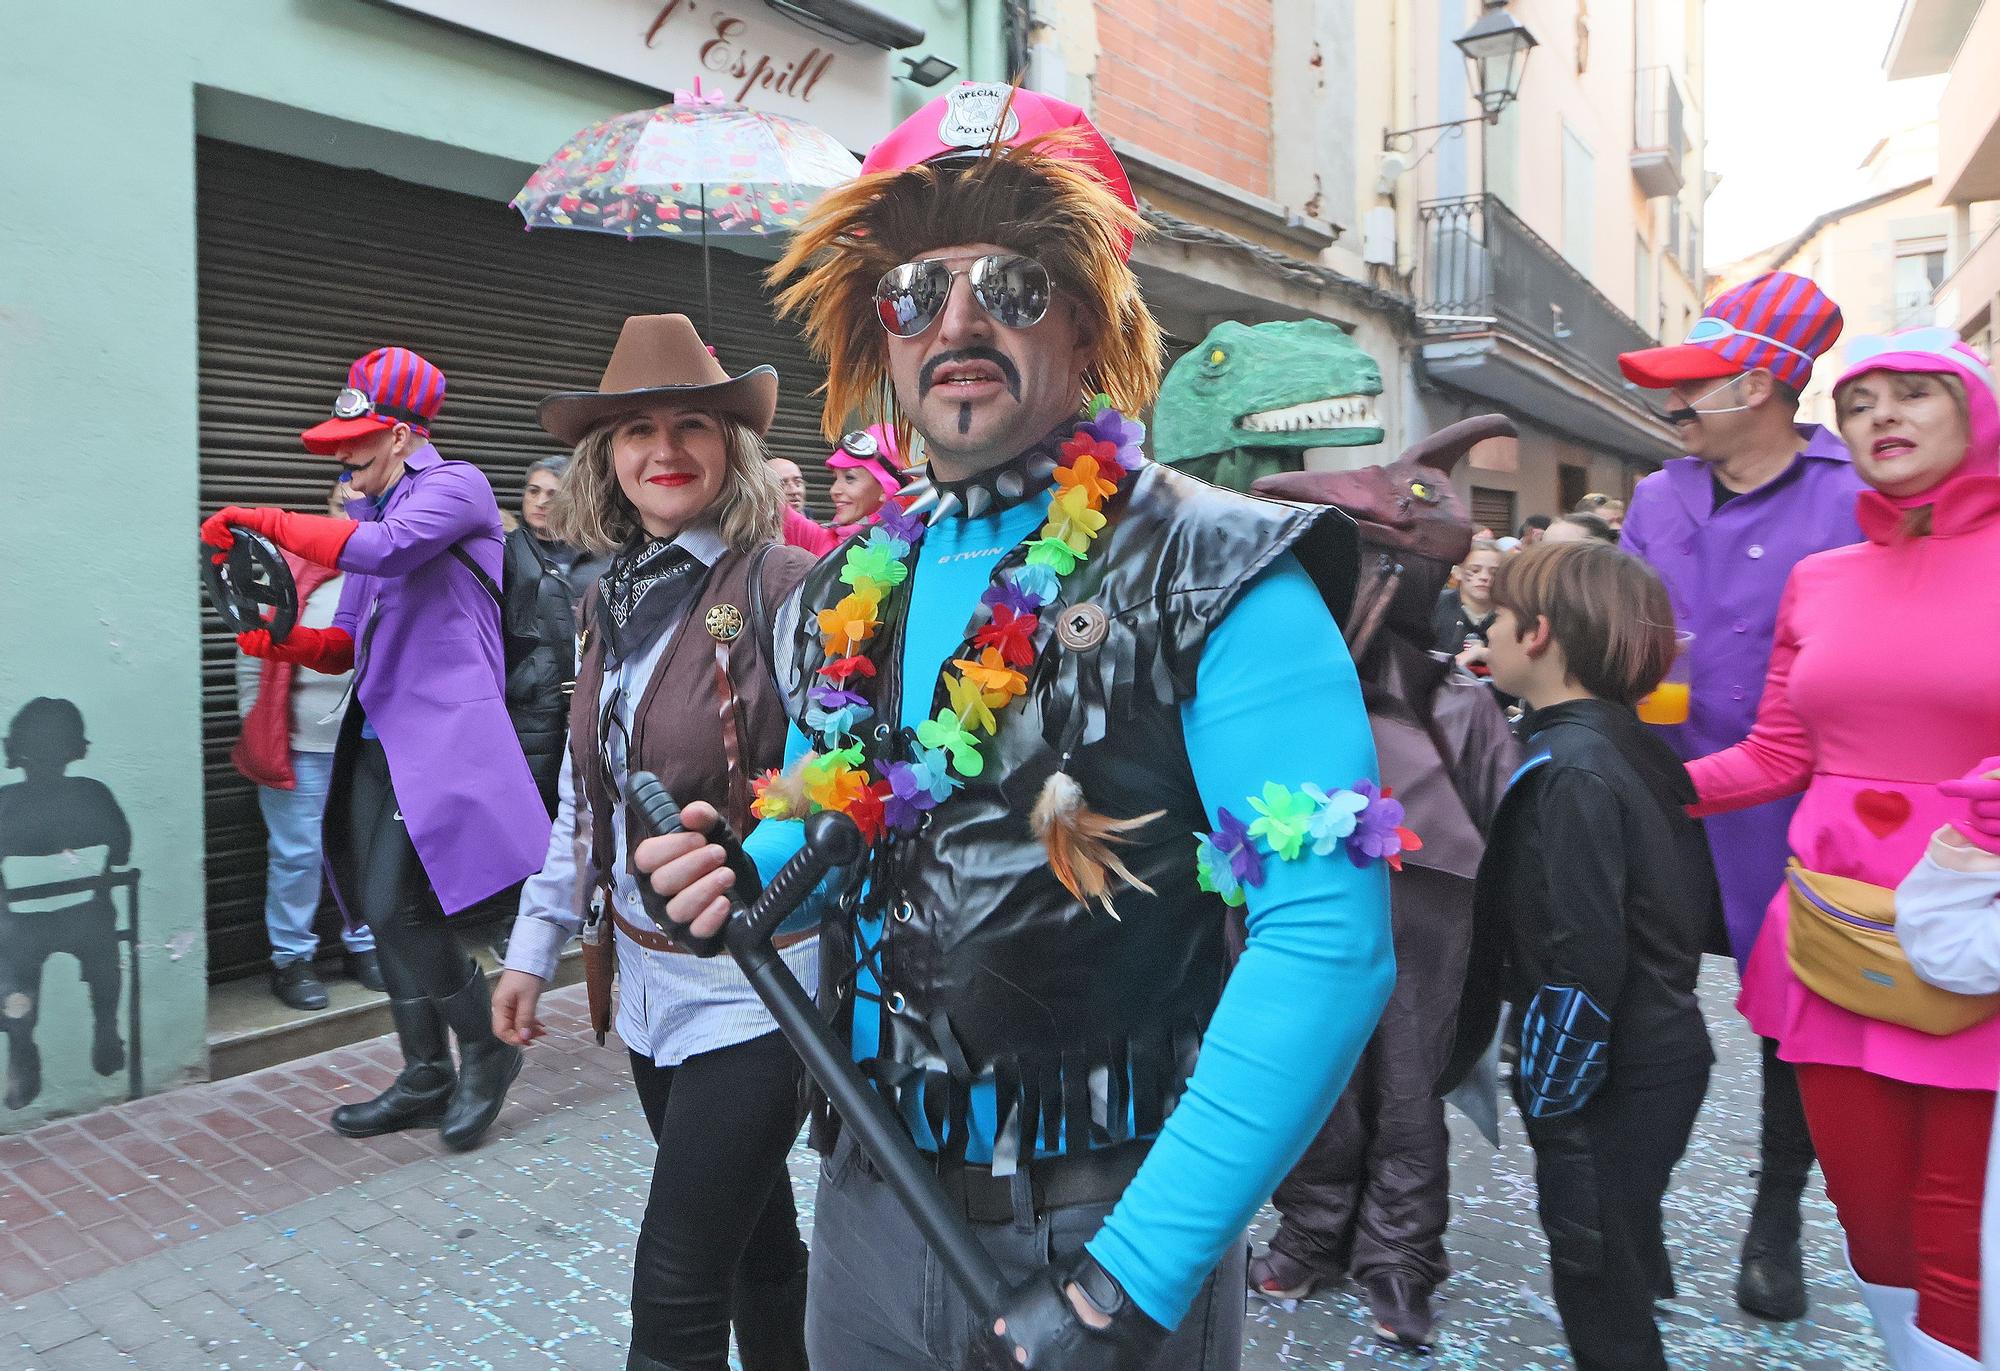 Busca't a les imatges del Carnaval de Sallent